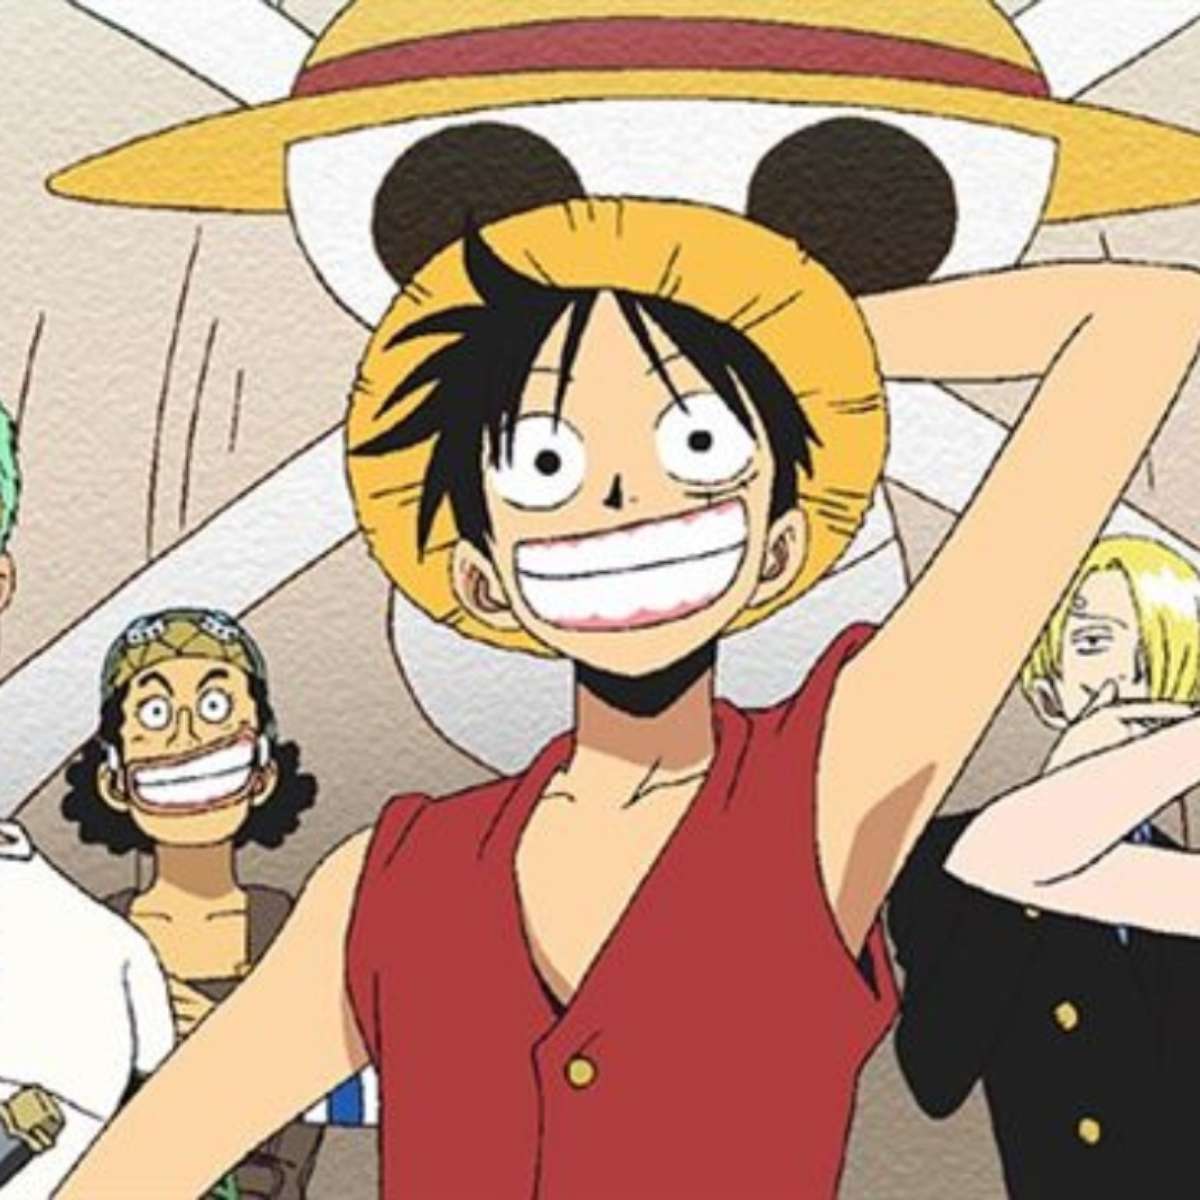 Ver One Piece temporada 11 episodio 2 en streaming